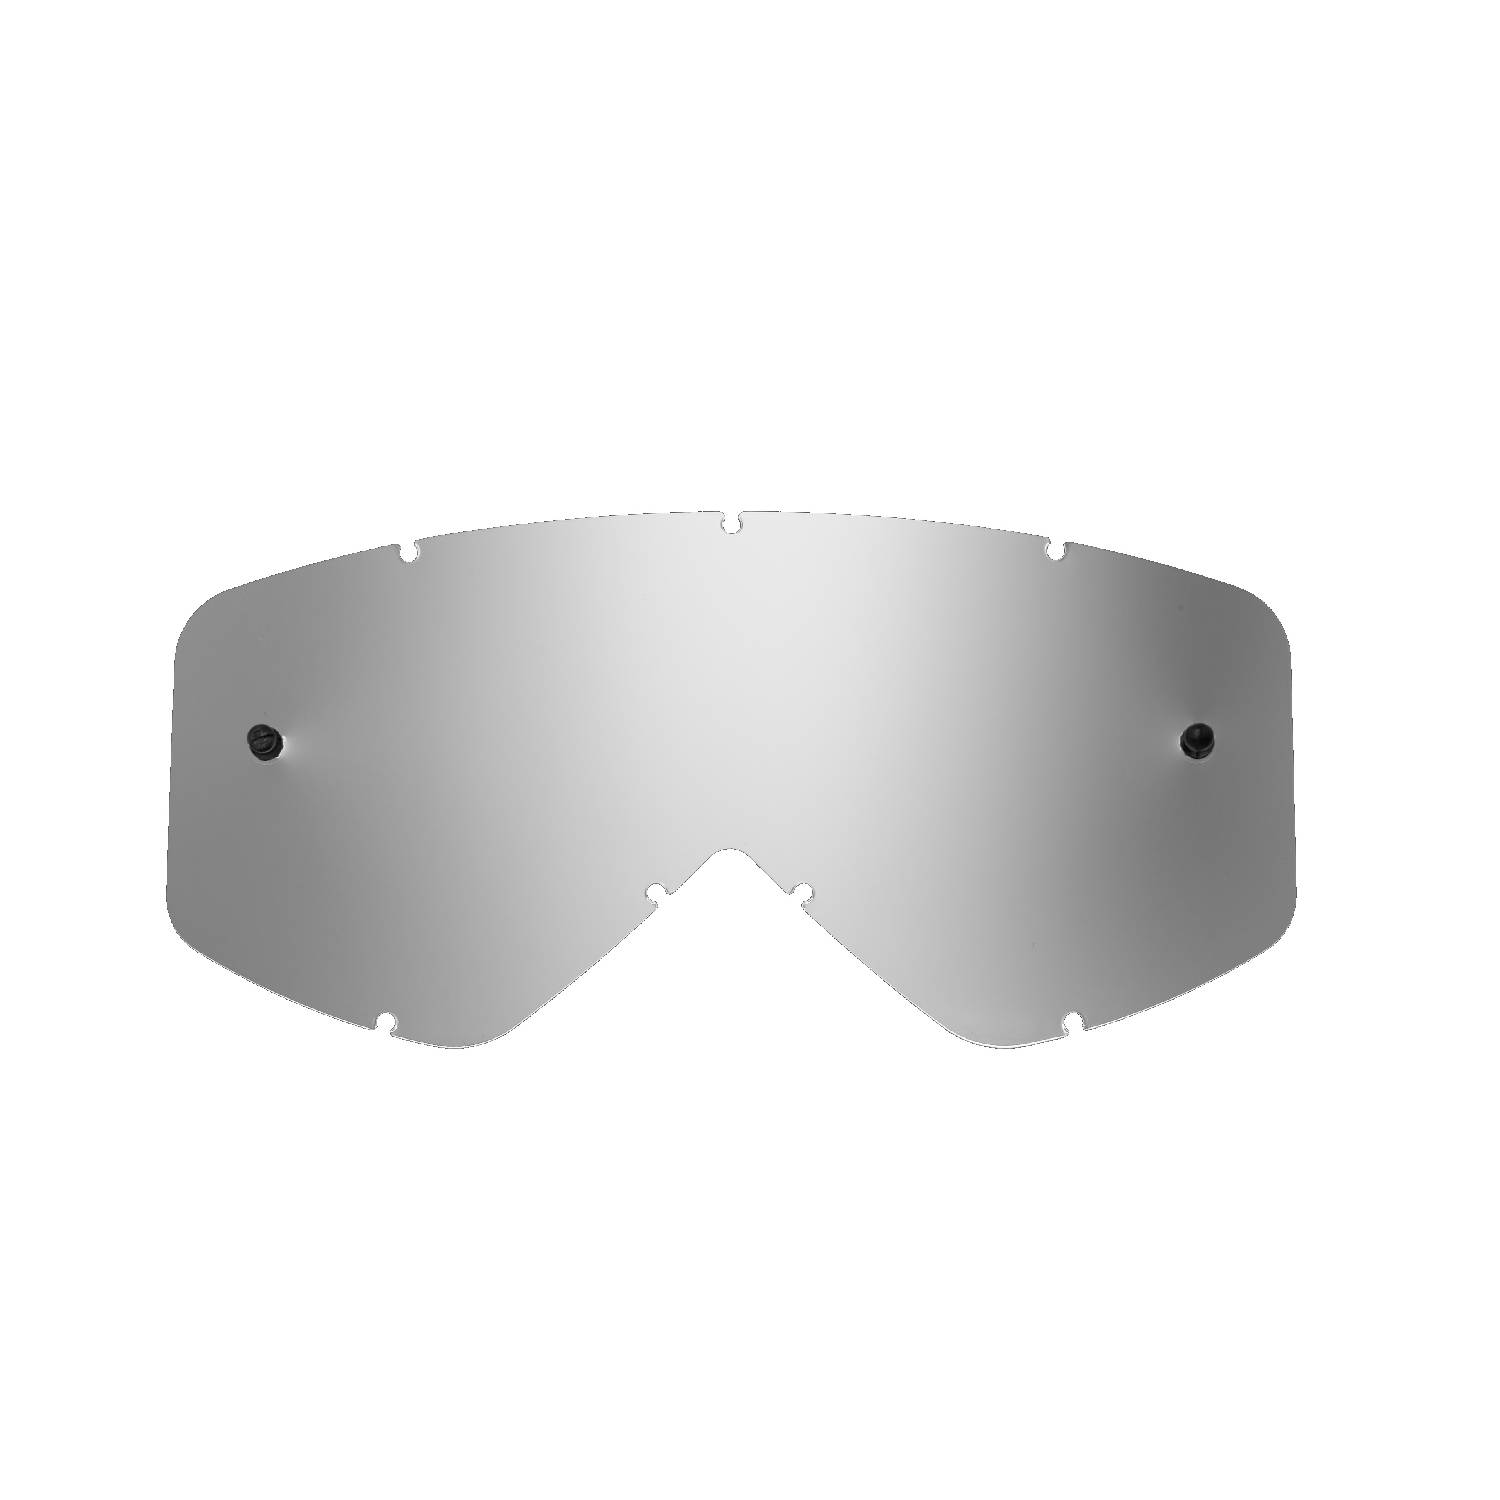 Lente di ricambio argento specchiato compatibile per occhiale/maschera Smith Fuel / Intake / V1 / V2